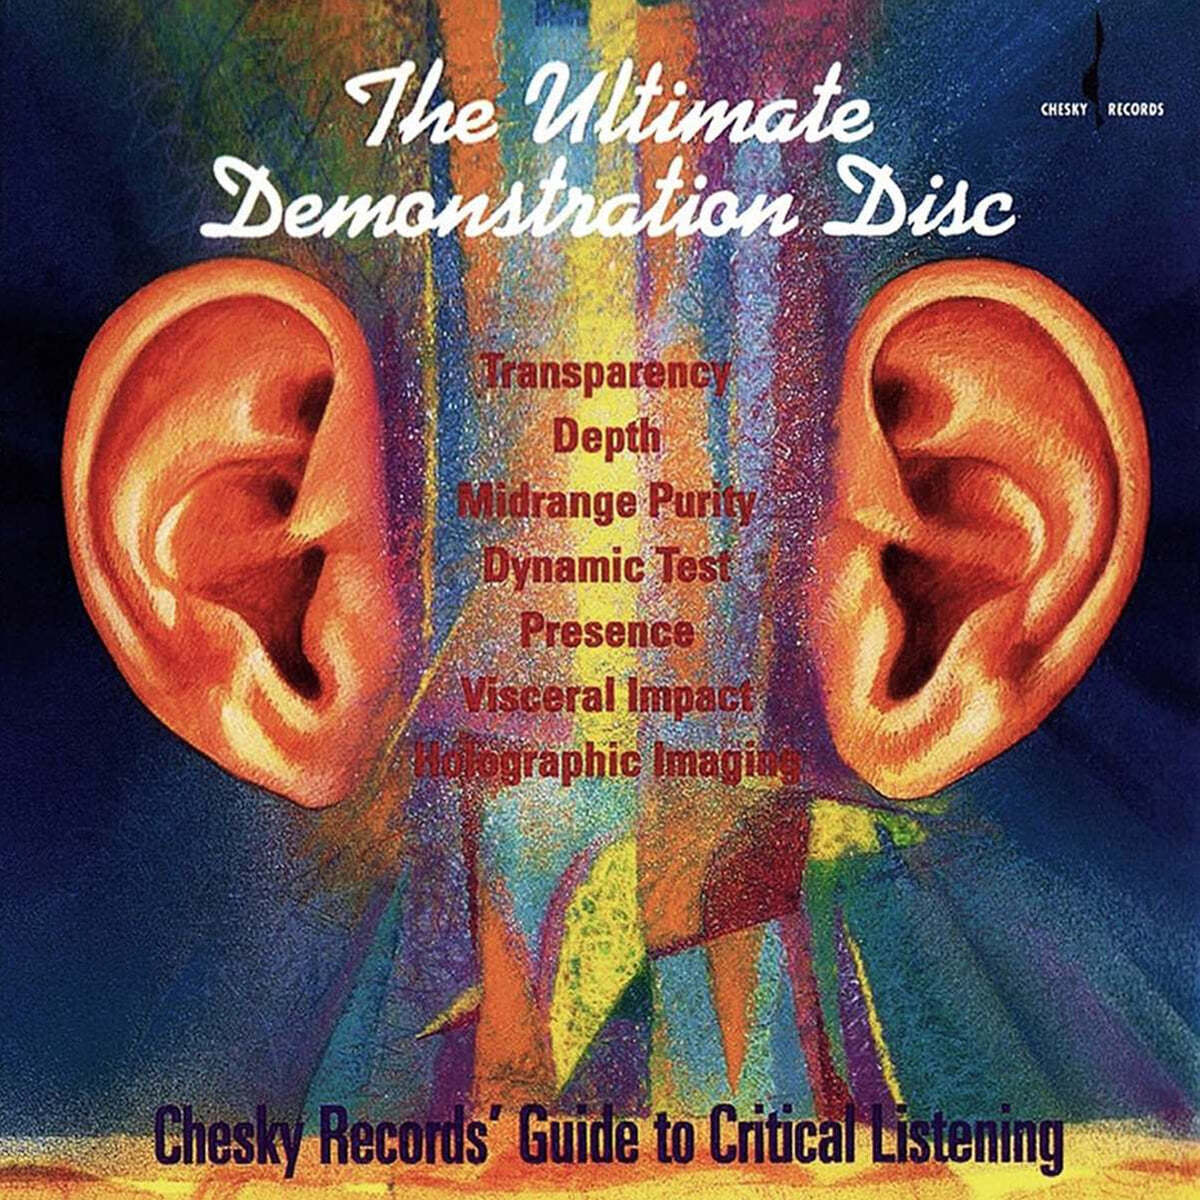 얼티메이트 데몬스트레이션 디스크 : 체스키 오디오 테스트 길라잡이 [귀그림 테스트] (Ultimate Demonstration Disc)